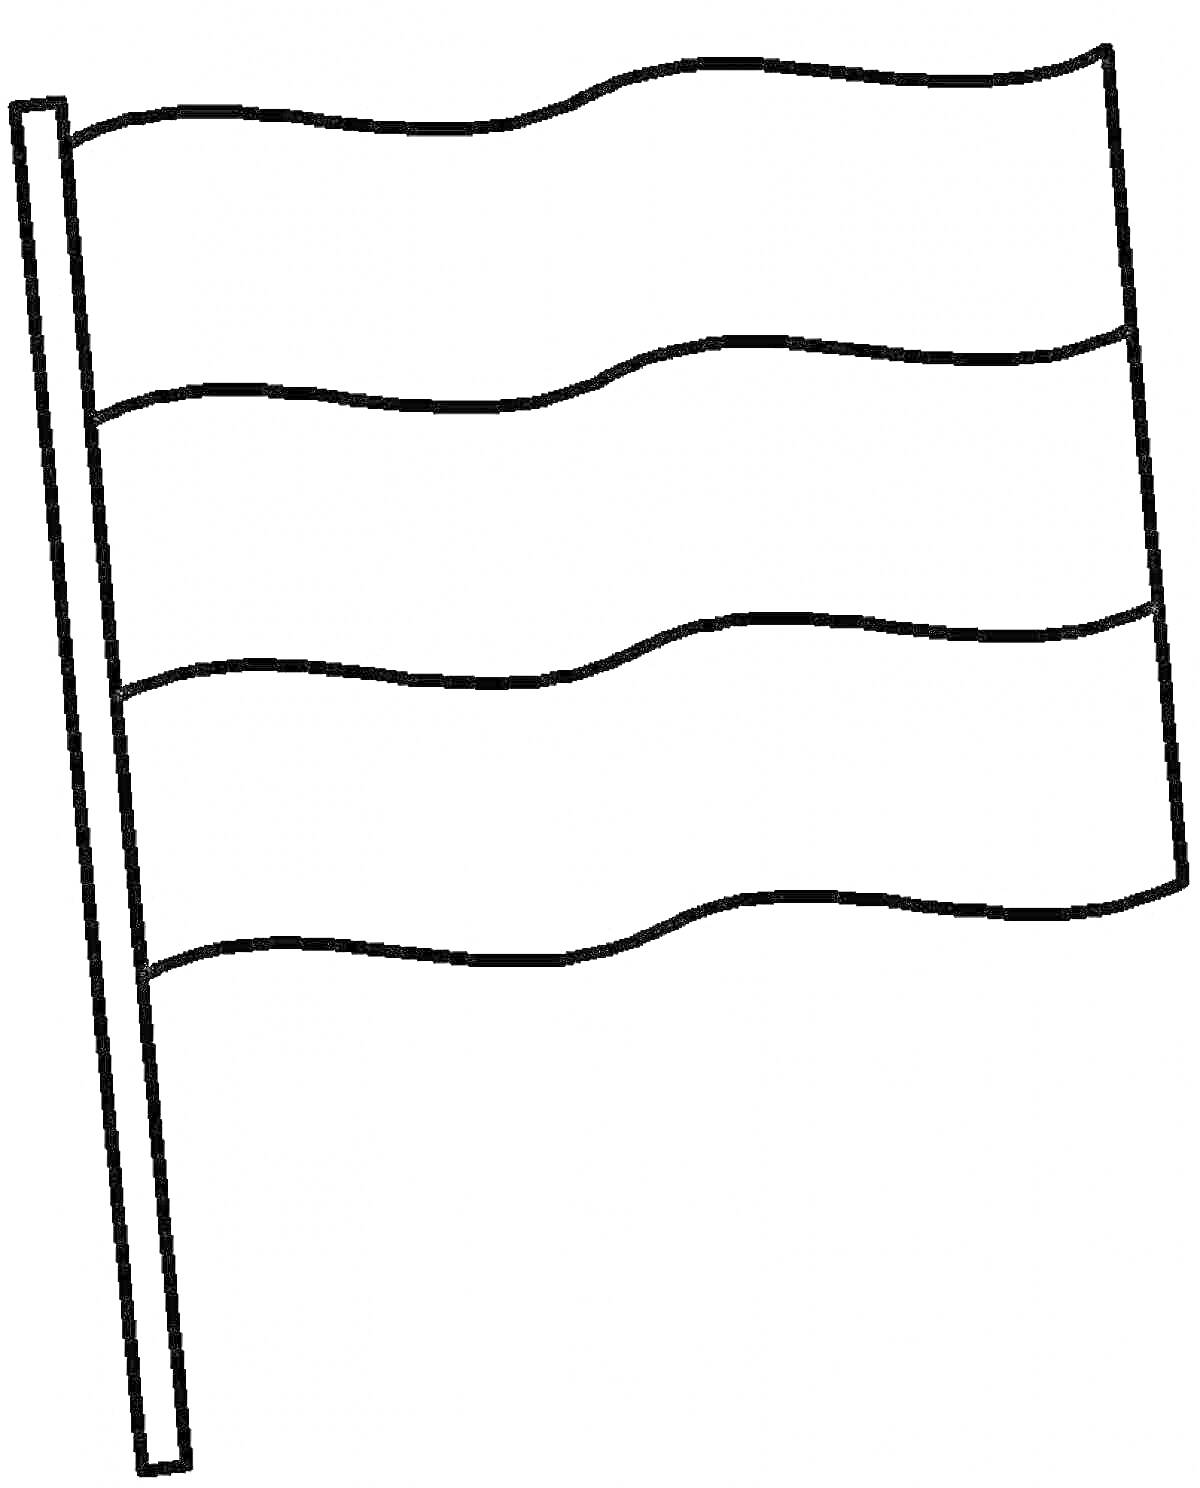 Флаг России (чёрно-белое изображение с тремя горизонтальными полосами)